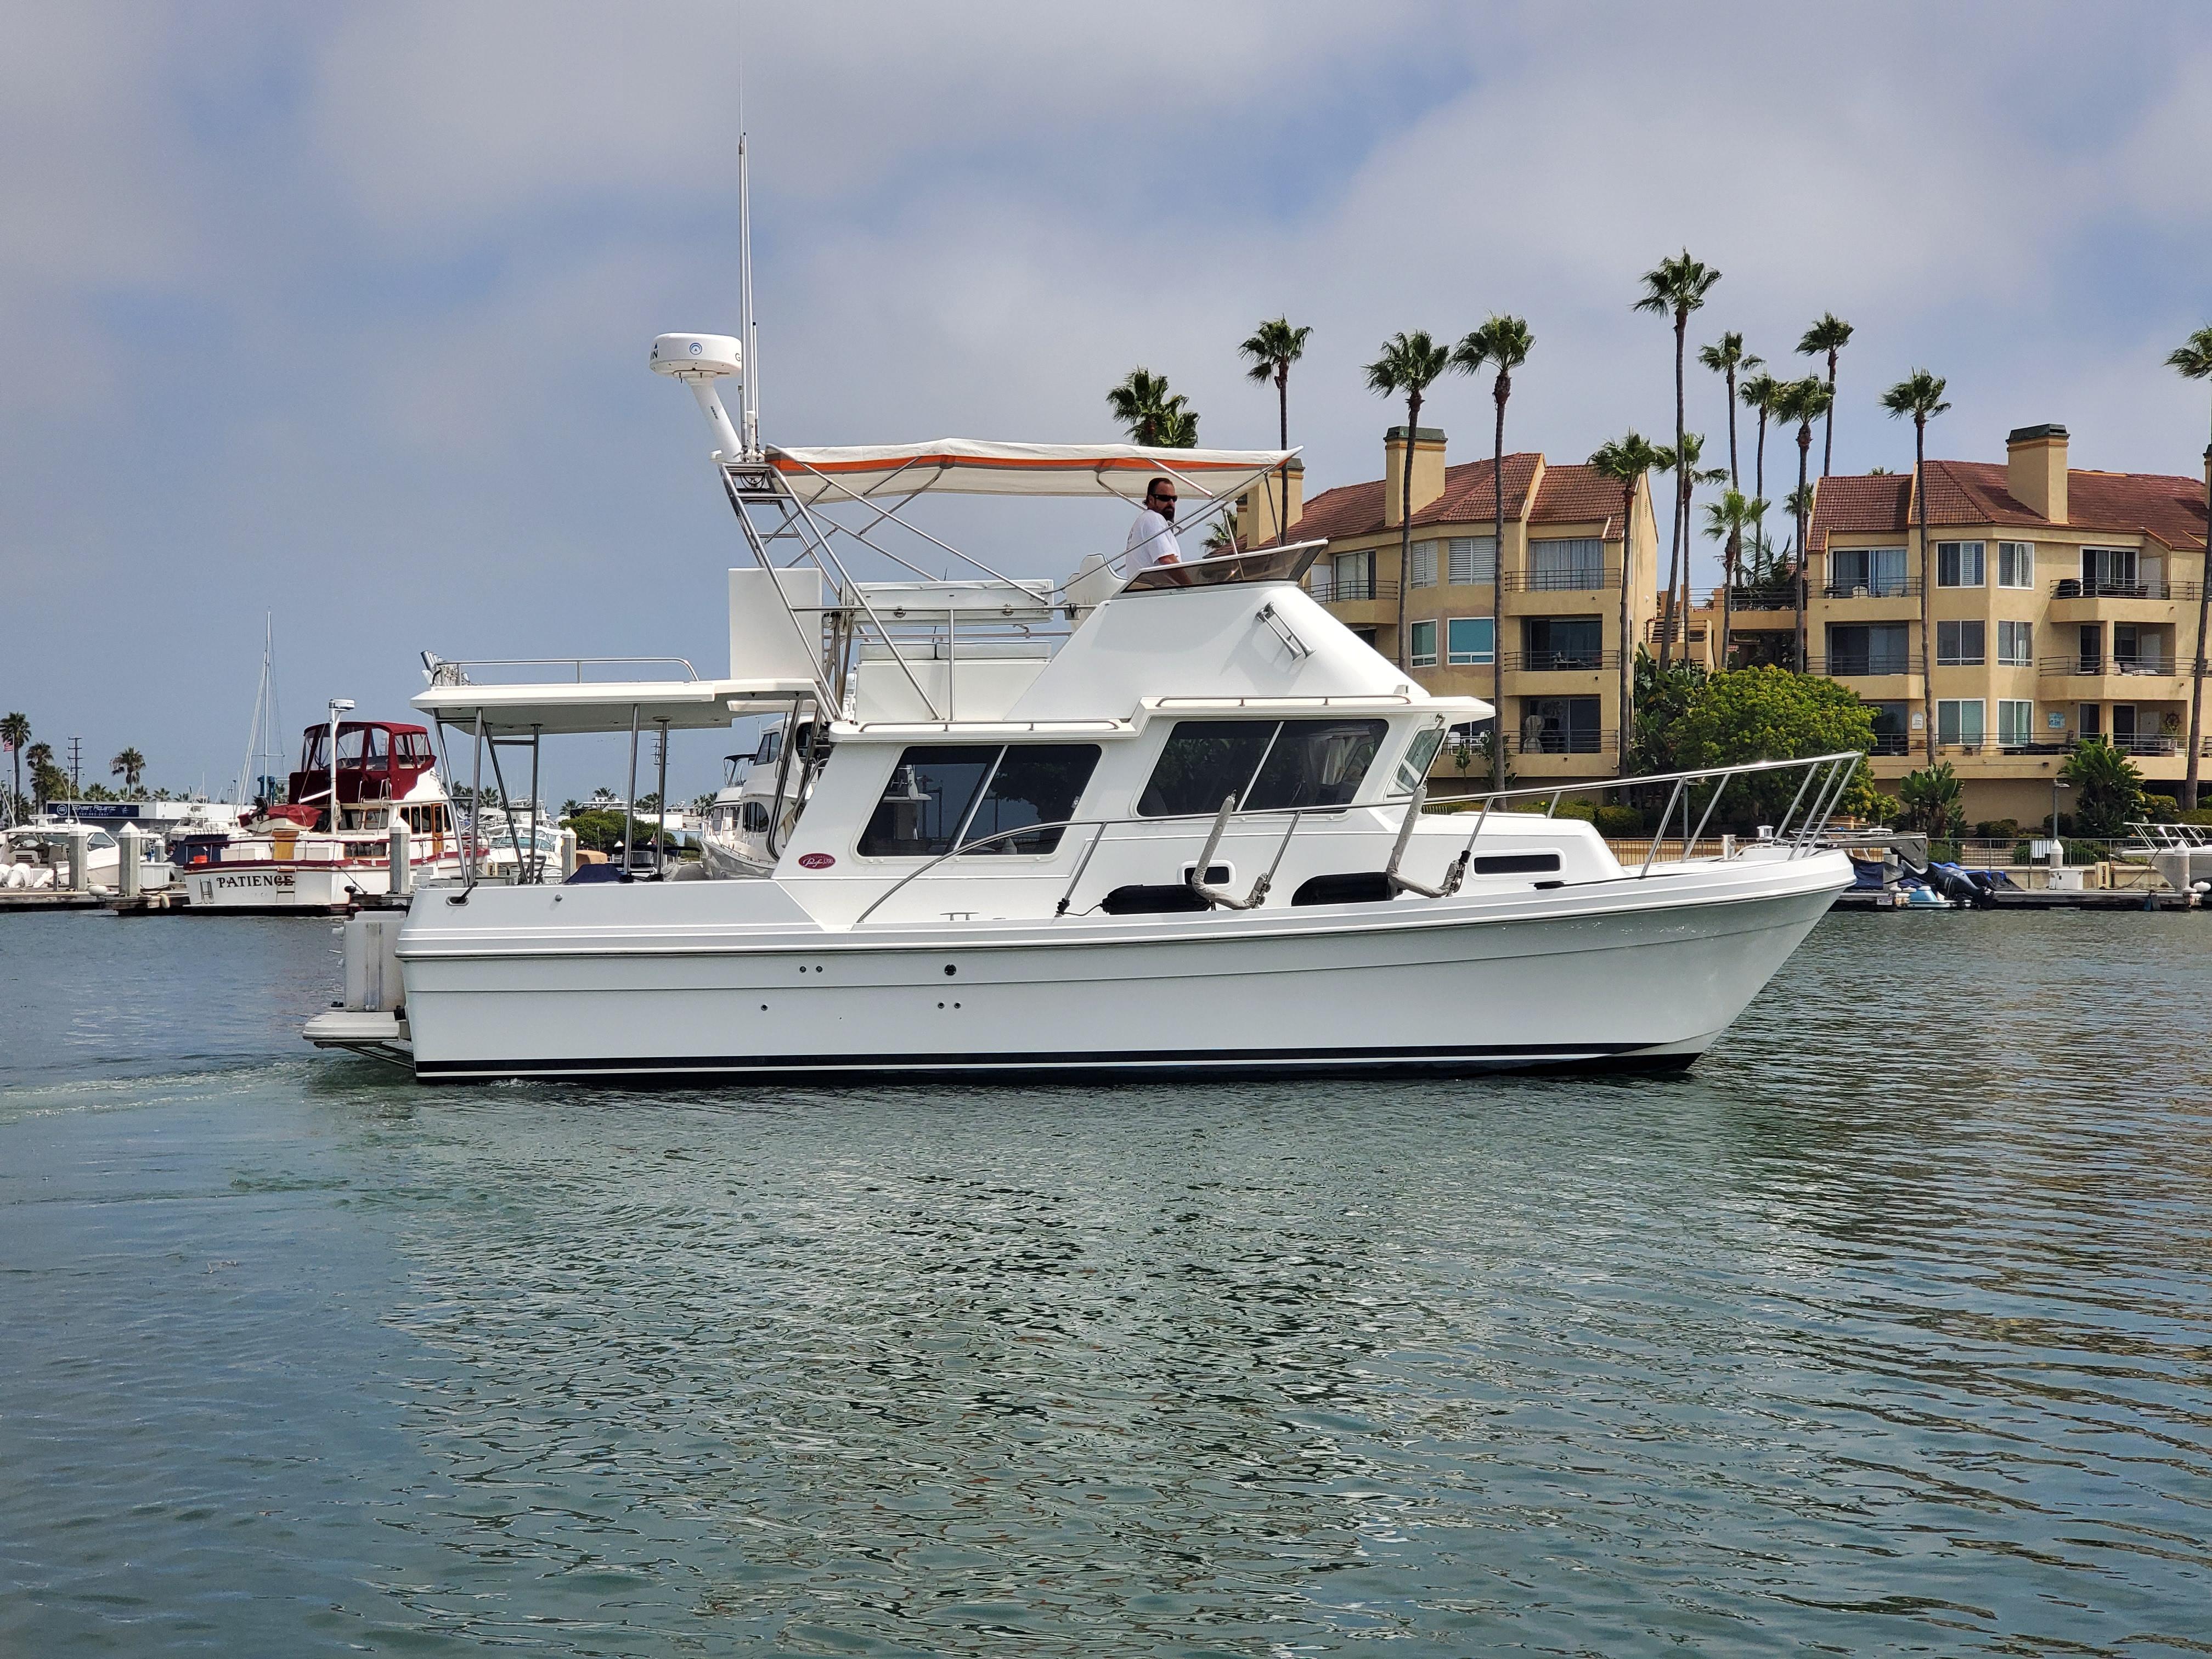 Sold: Sea Sport Pacific 3200 Boat in Lillian, AL, 346656